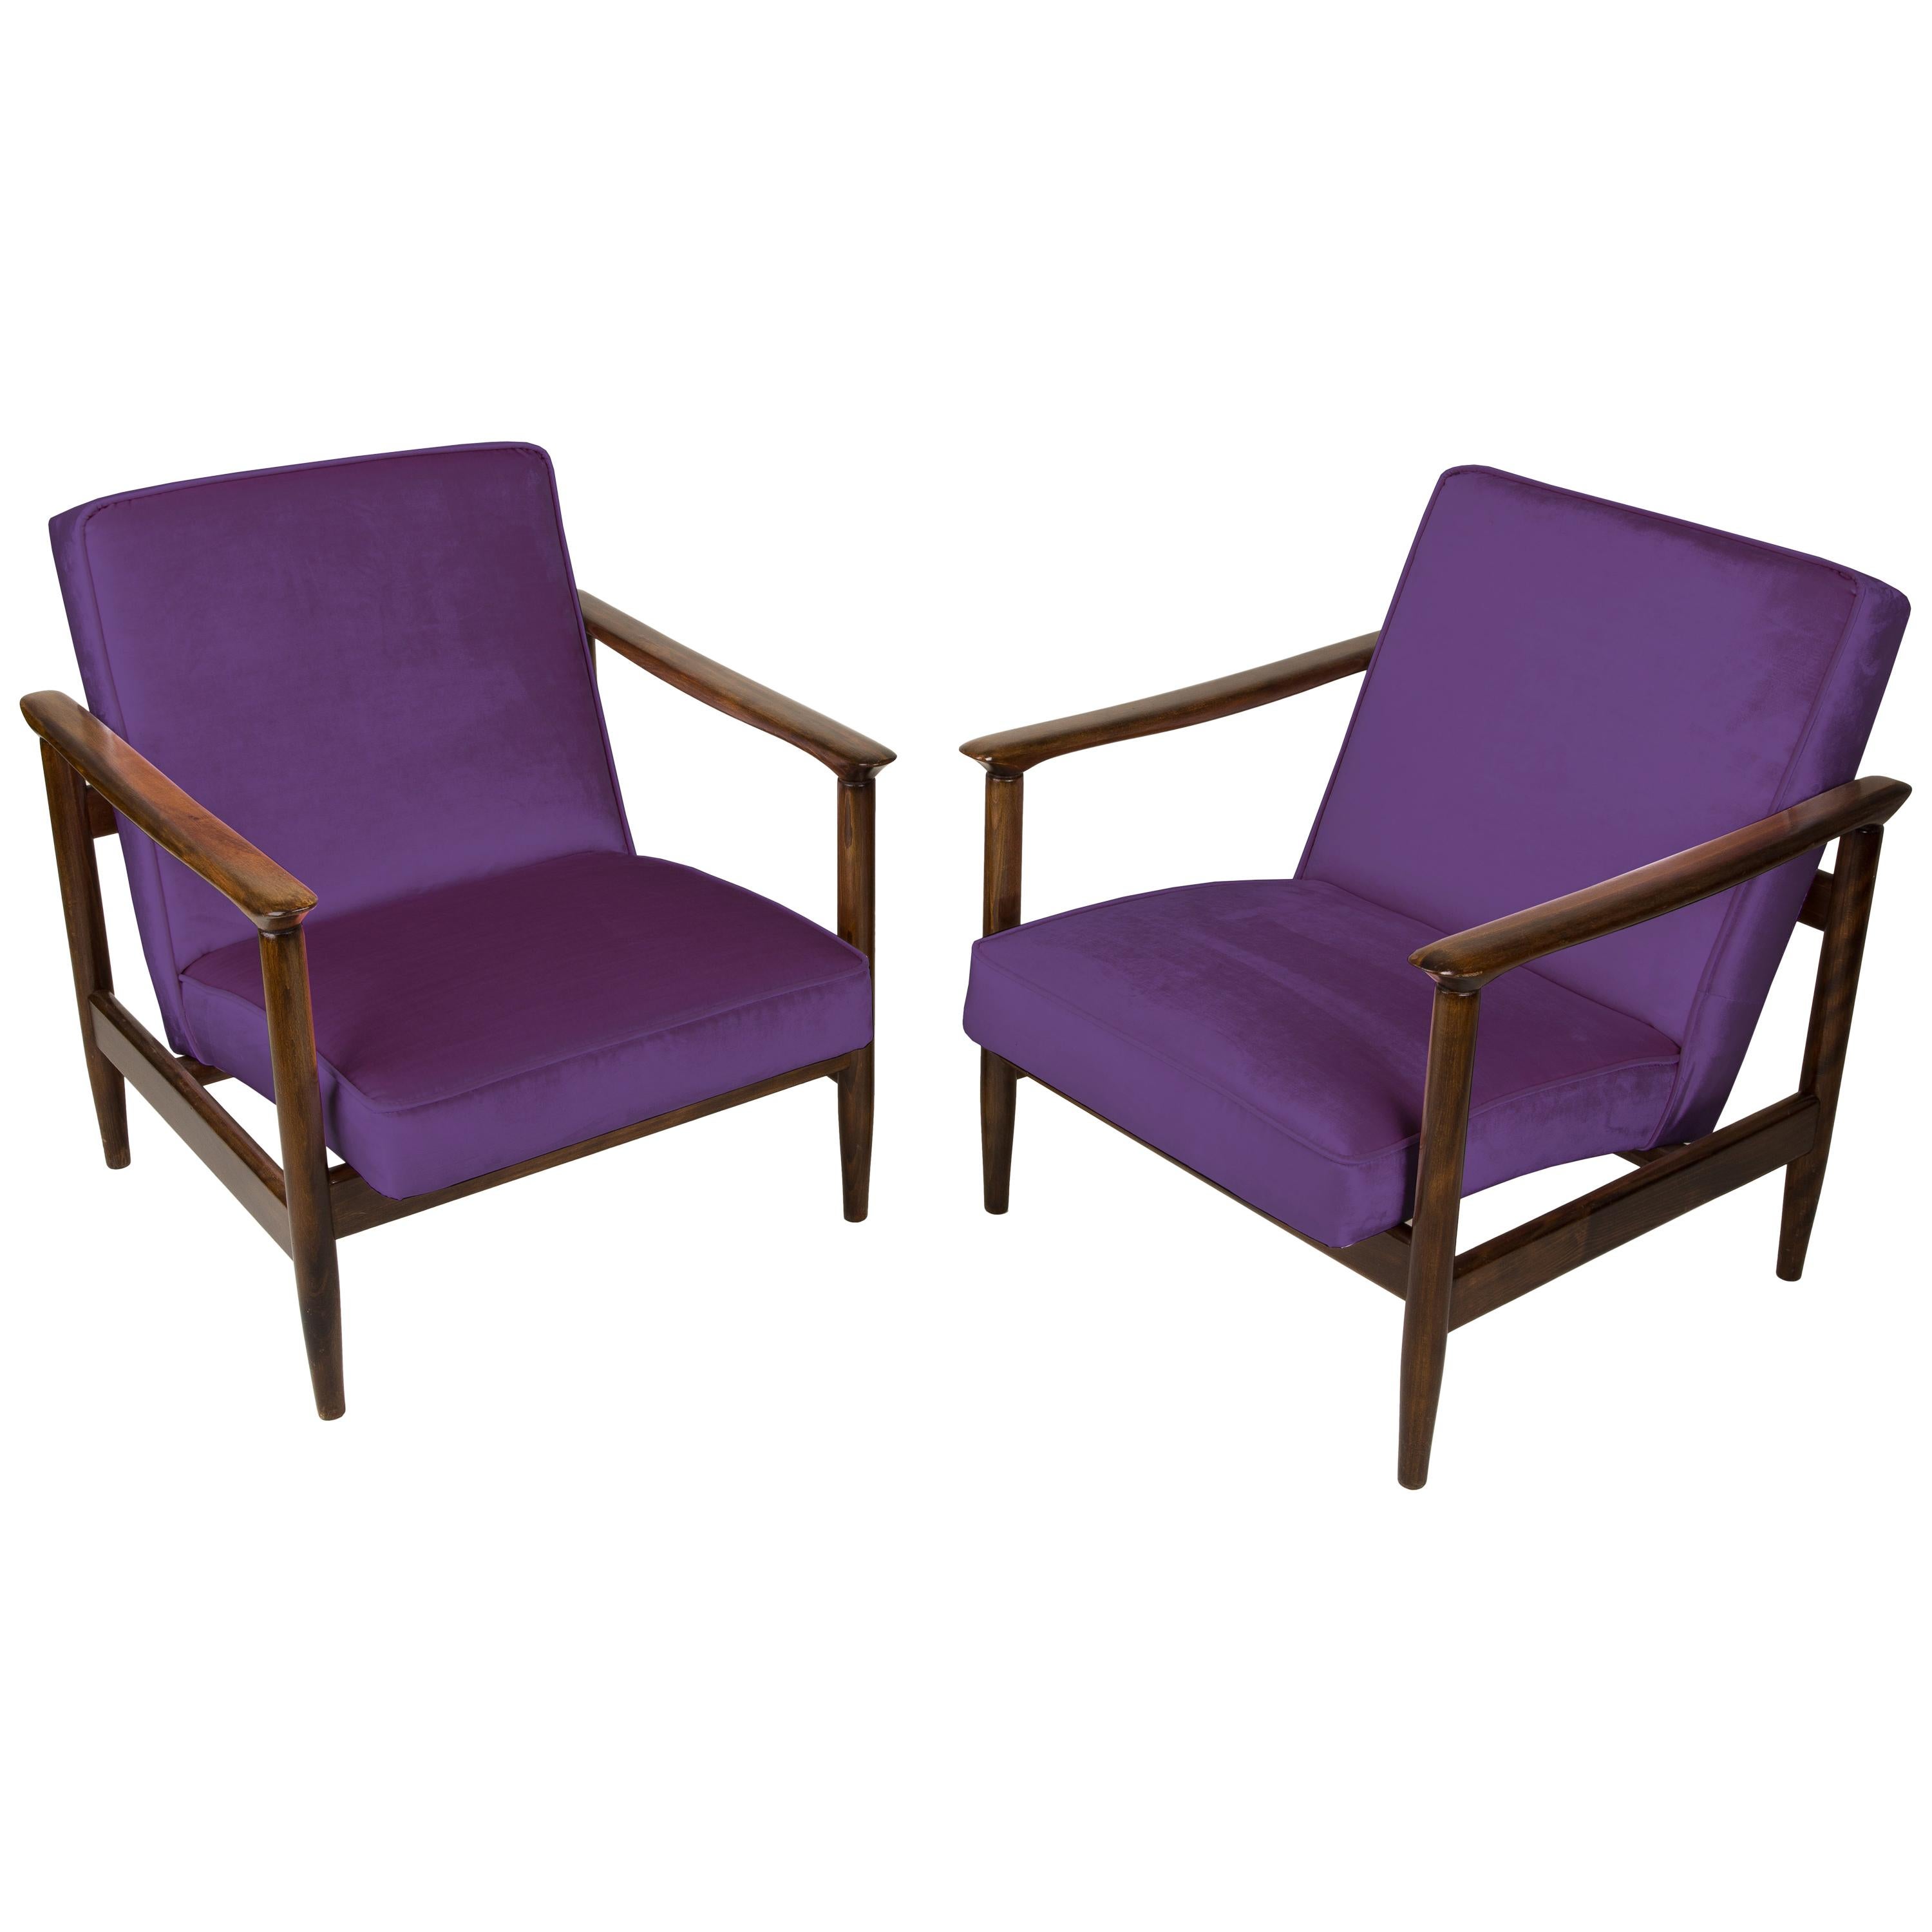 Pair of Purple Violet Armchairs, Edmund Homa, GFM-142, 1960s, Poland For Sale